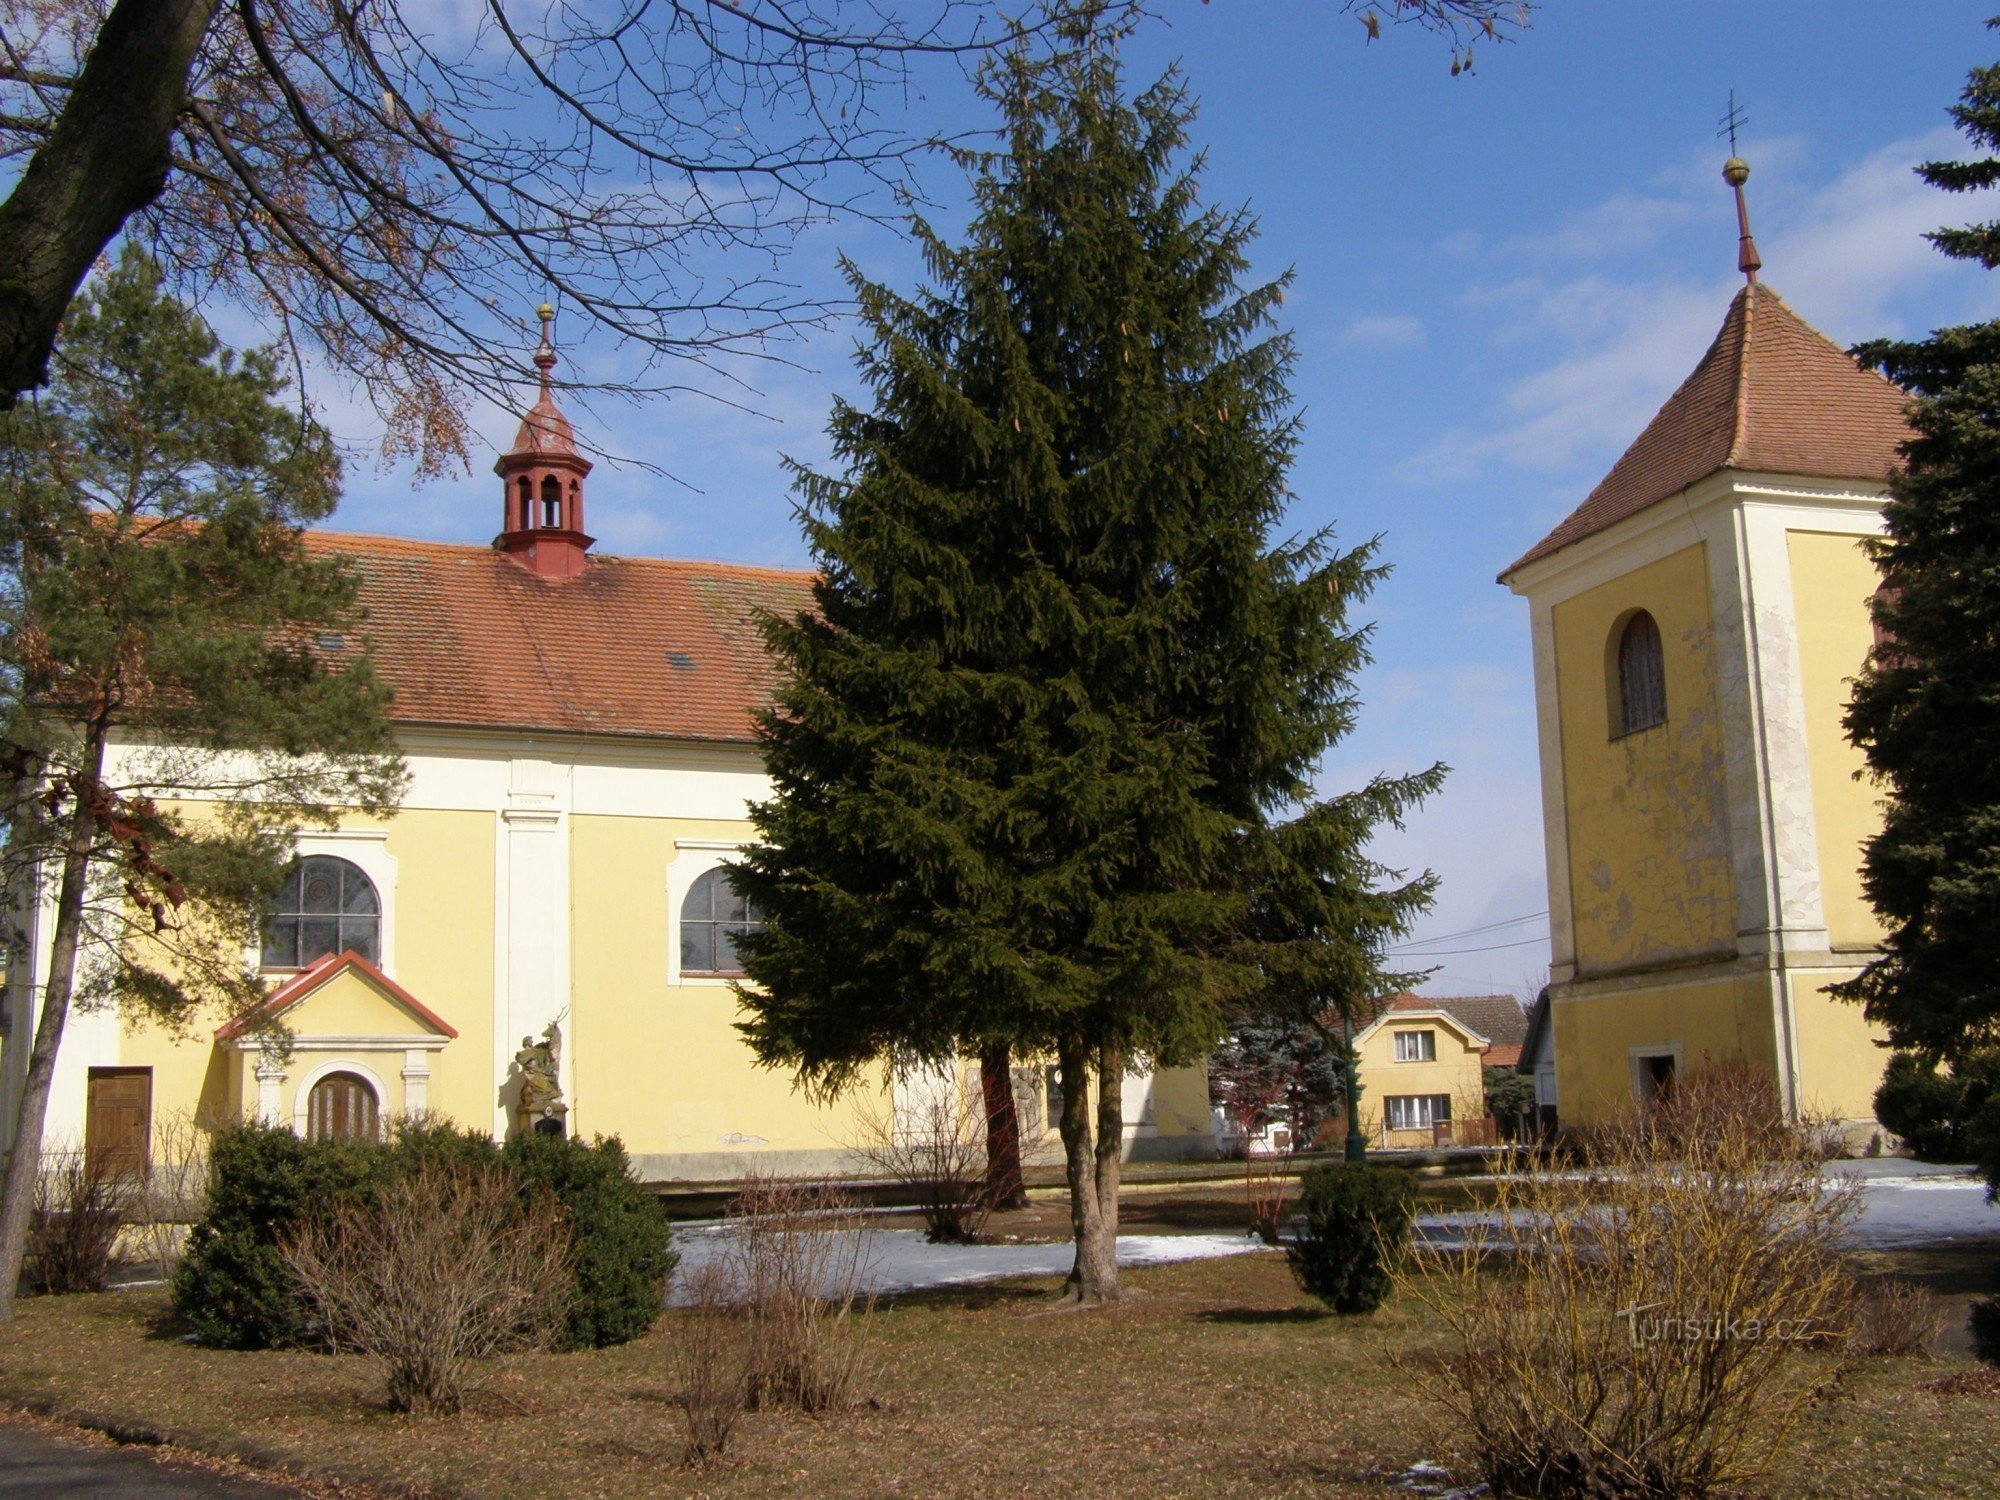 Lovčice - Cerkev sv. Bartolomeja z zvonikom